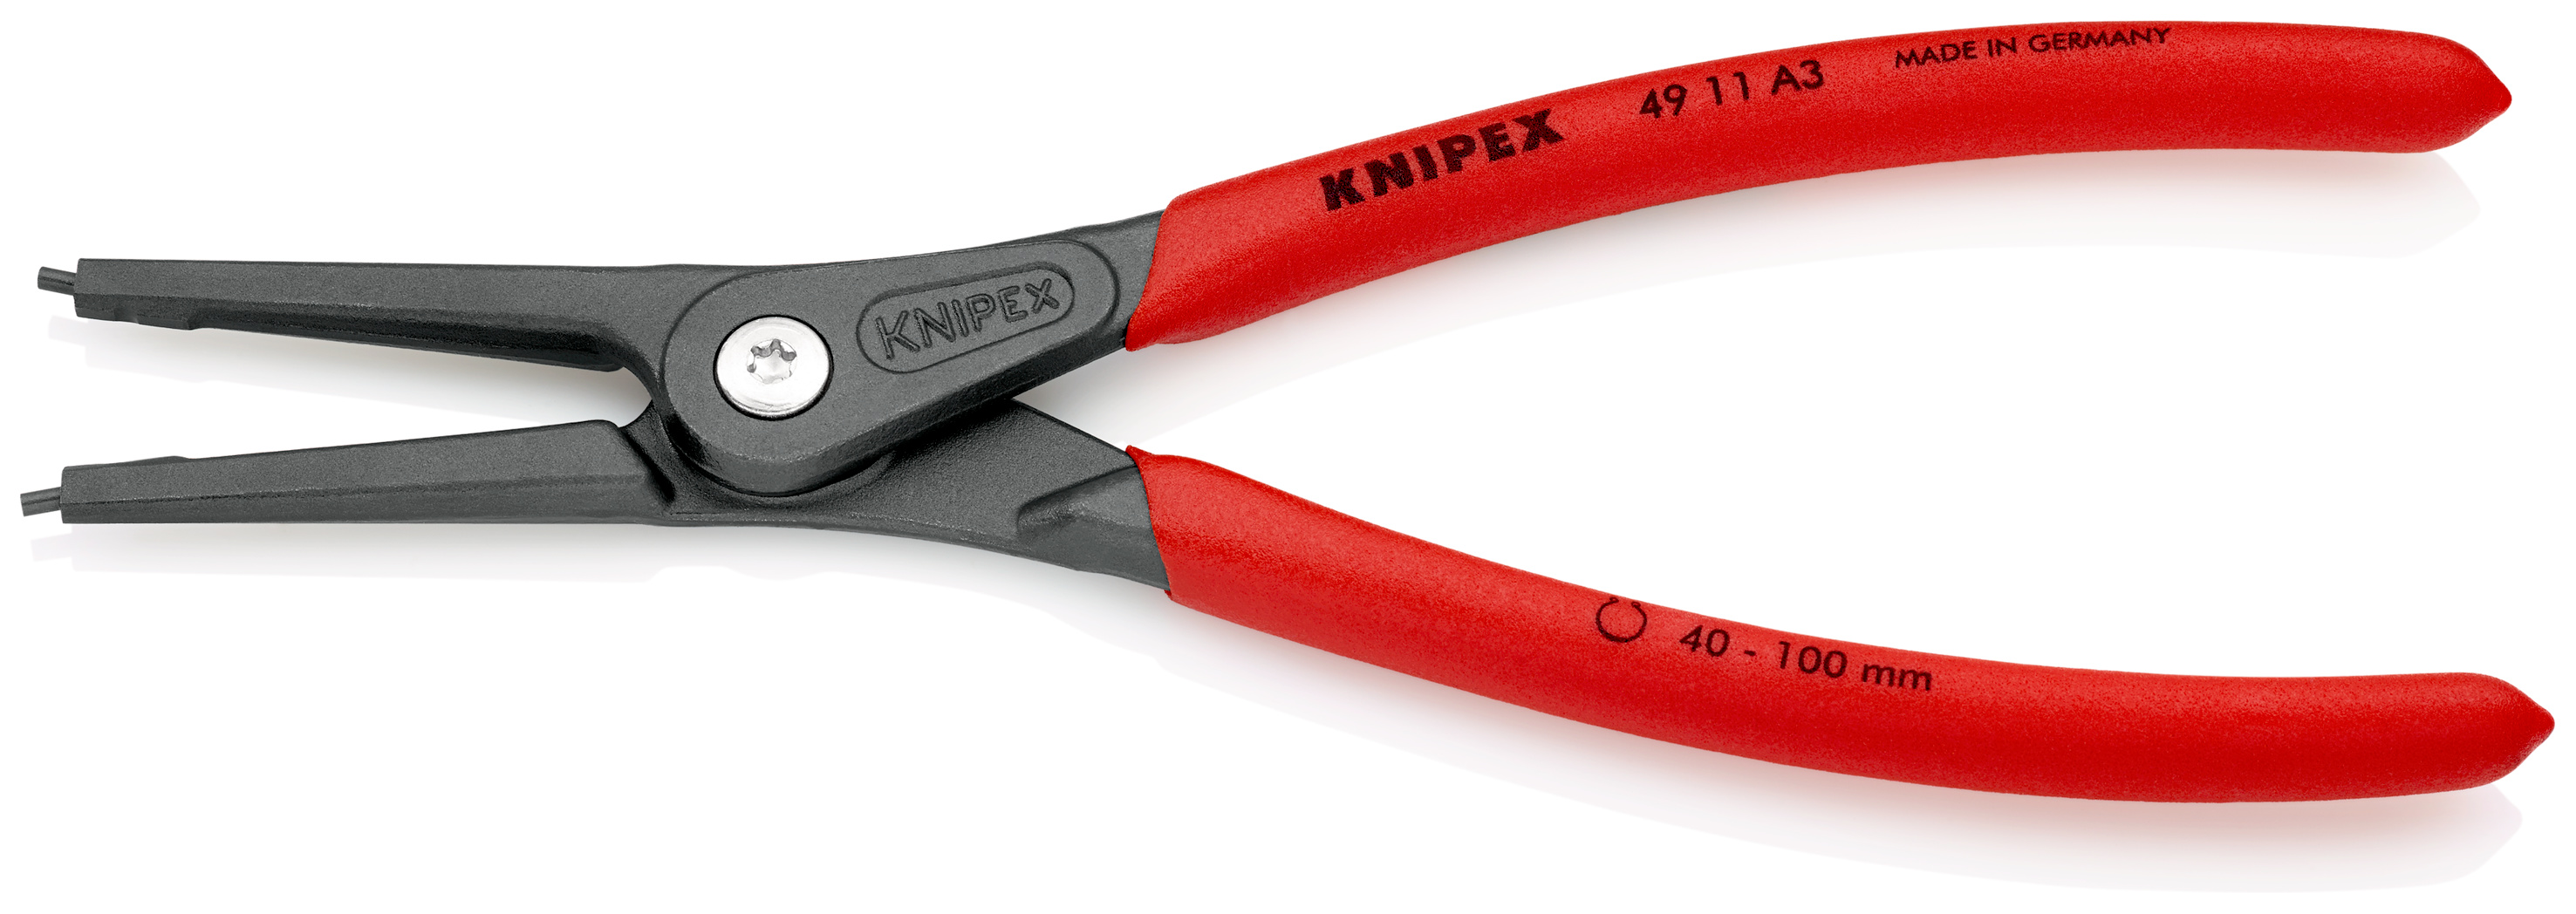 精密スナップリングプライヤー 軸用スナップリング用 | Knipex